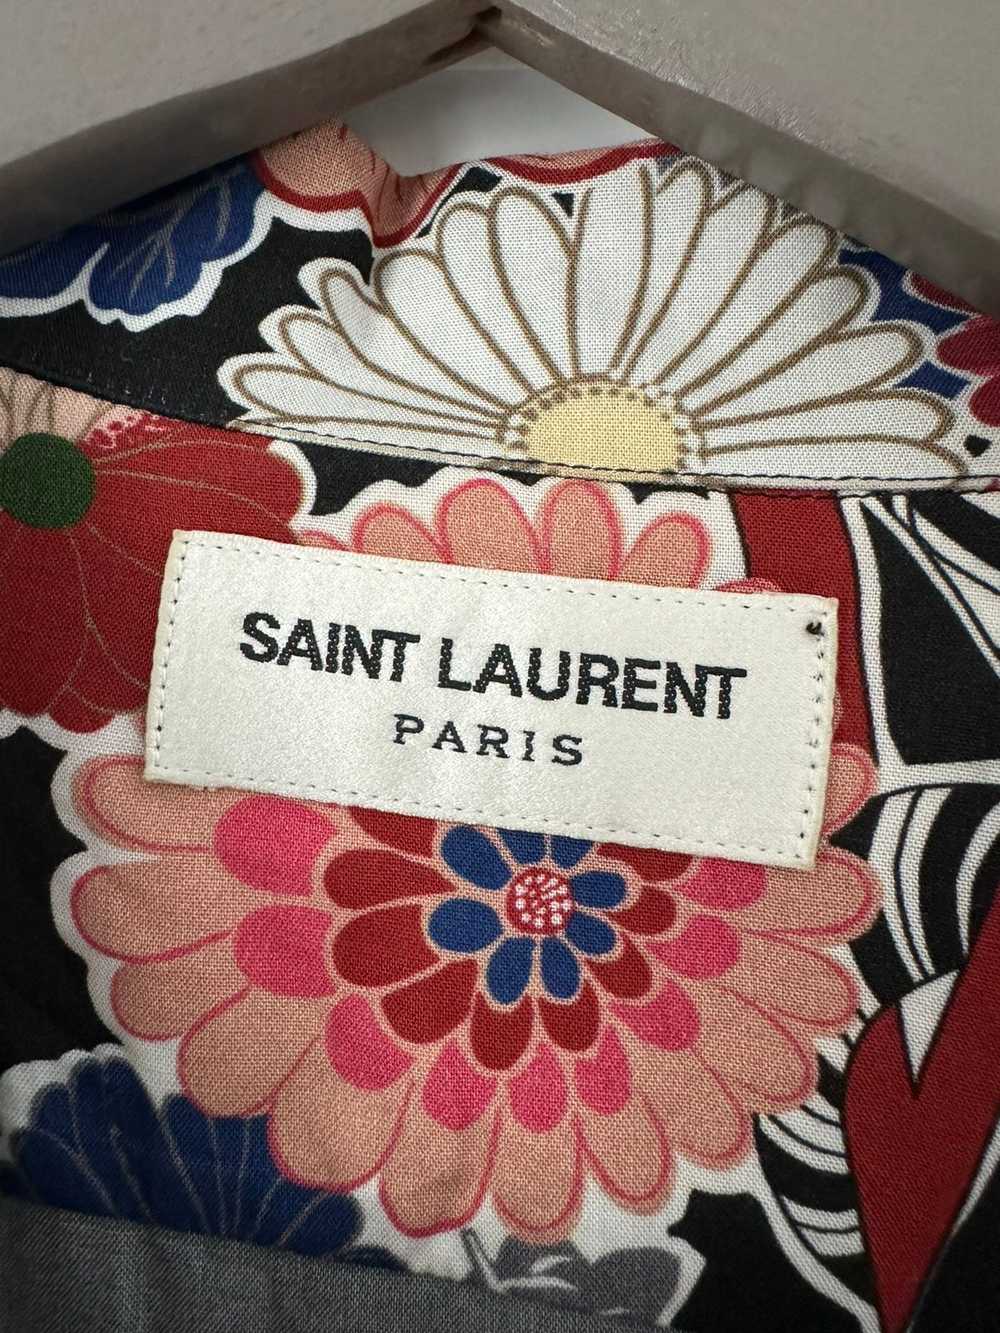 Saint Laurent Paris Saint Laurent Love Shirt - image 3